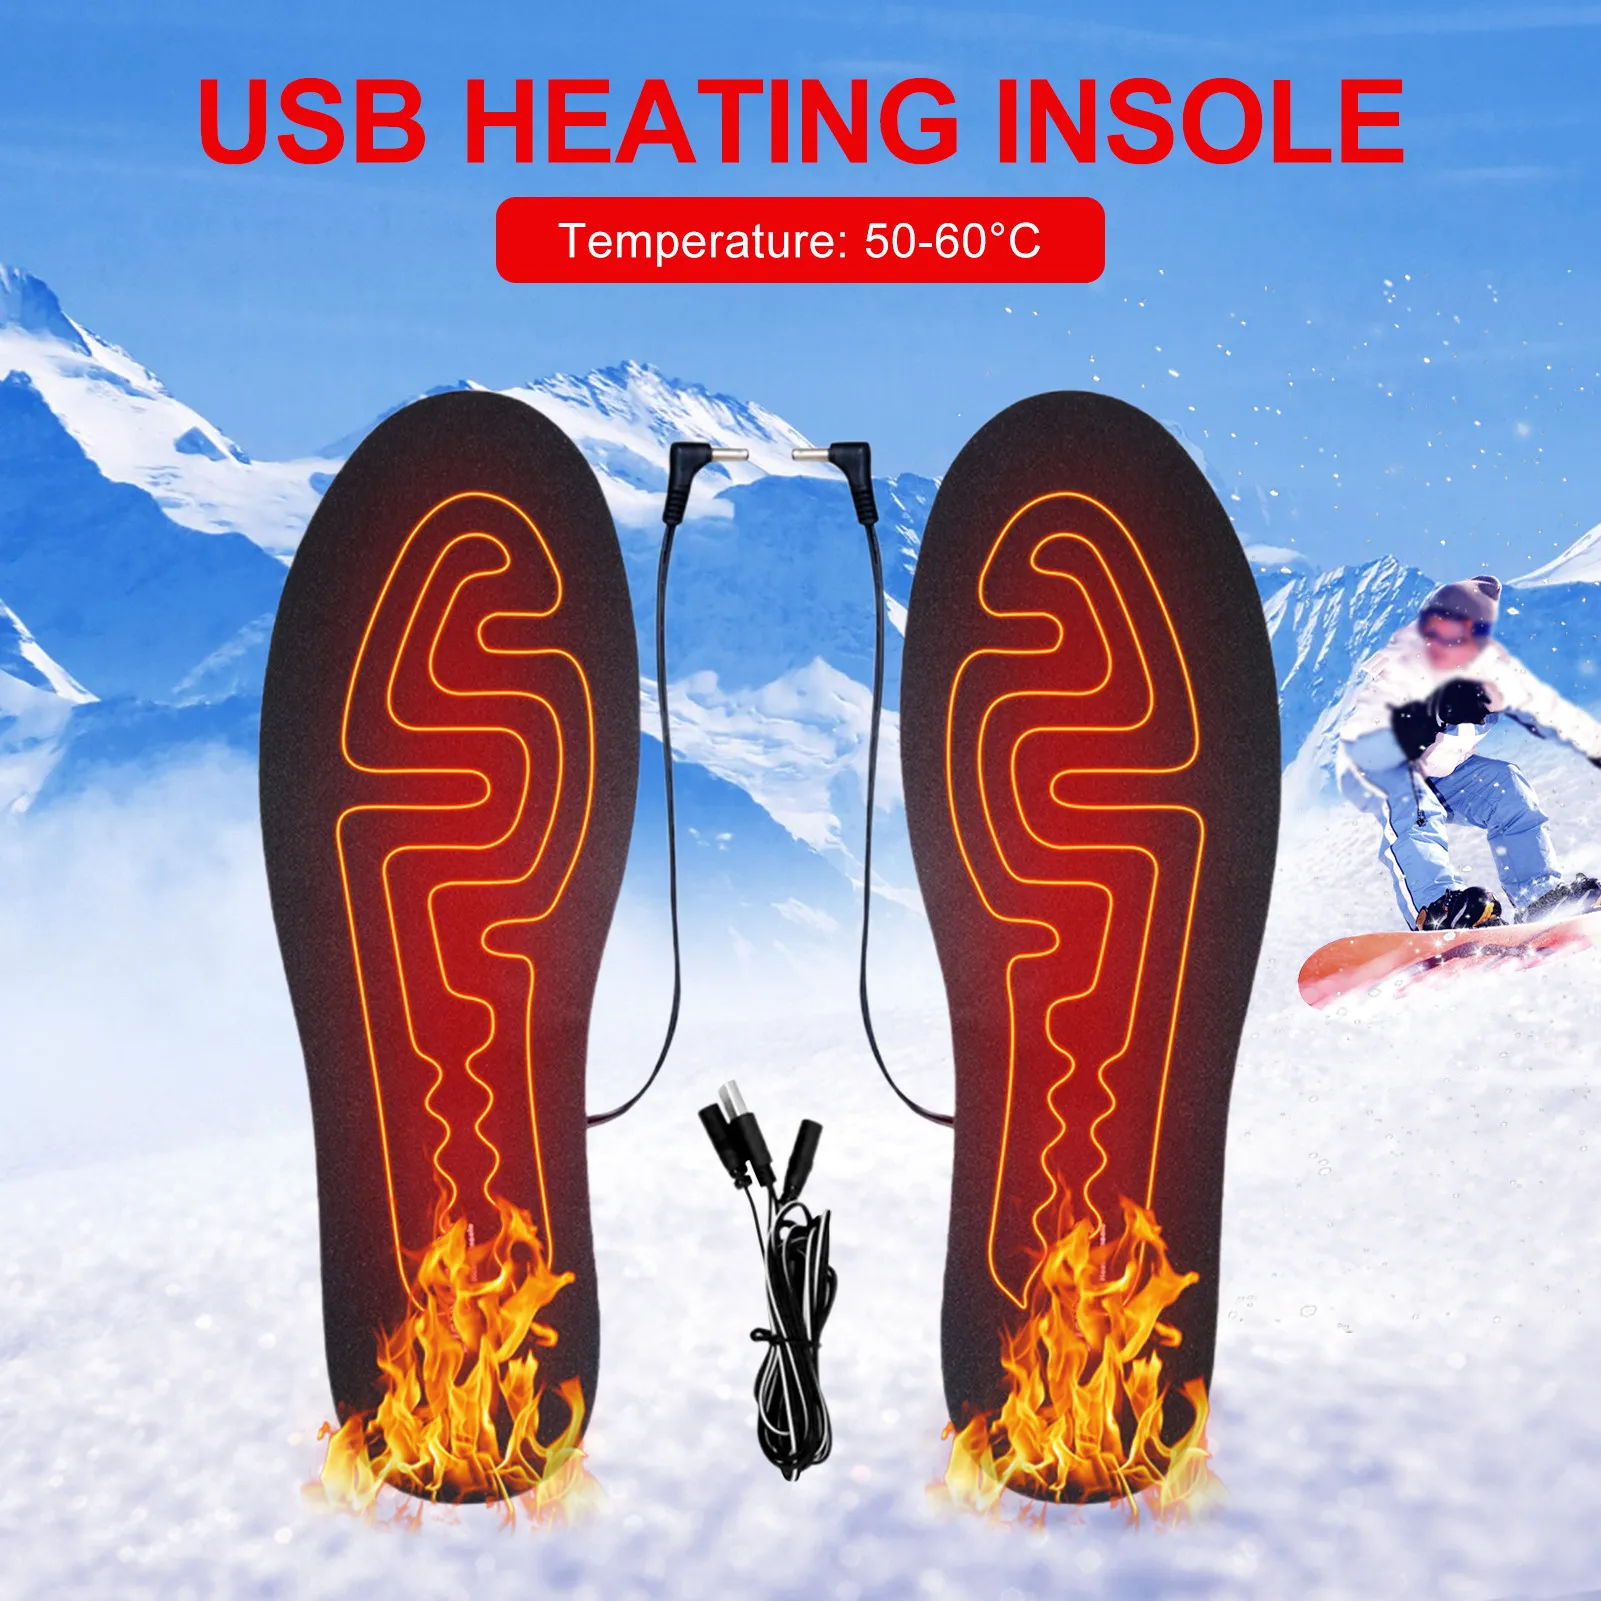 

Стельки с подогревом USB, электрическая грелка для ног, зимние теплые, для занятий спортом на открытом воздухе